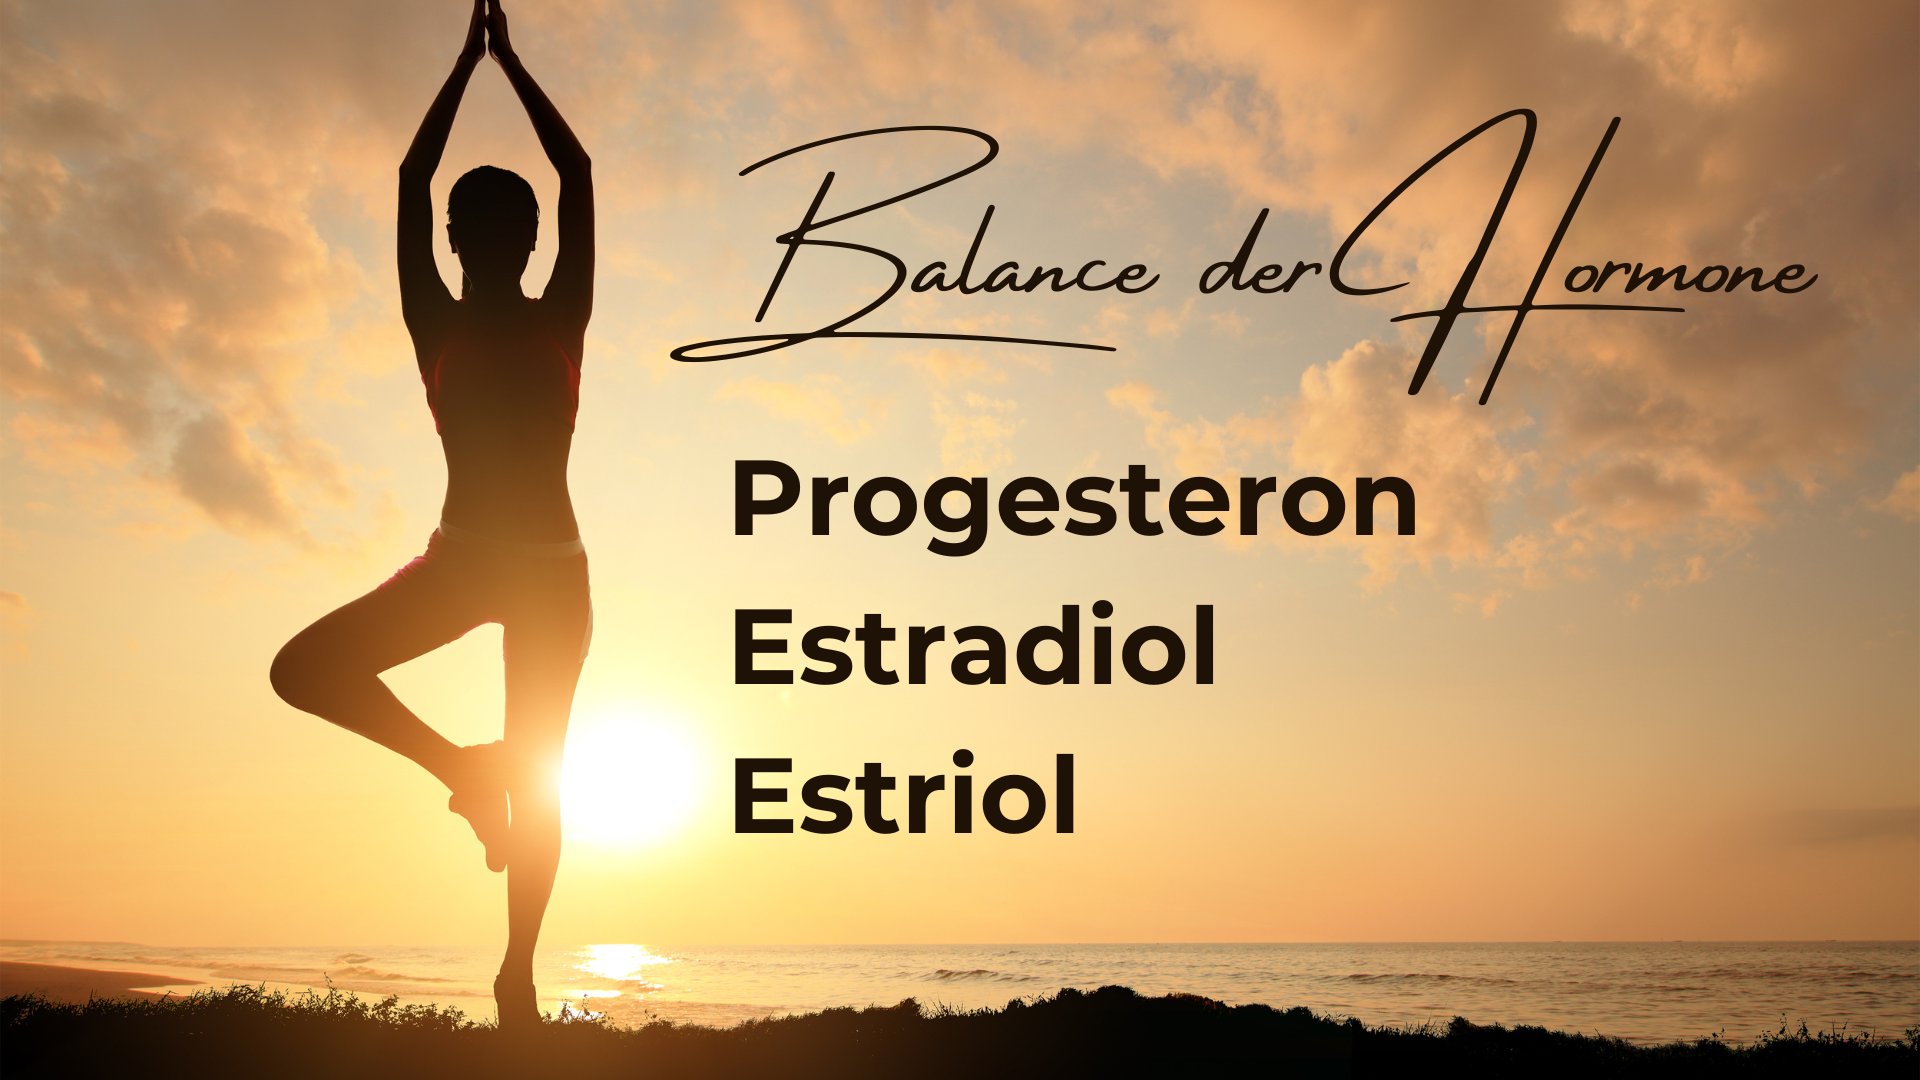 Du betrachtest gerade Die Hormontrilogie: Progesteron, Estradiol und Estriol – Meisterinnen der Balance